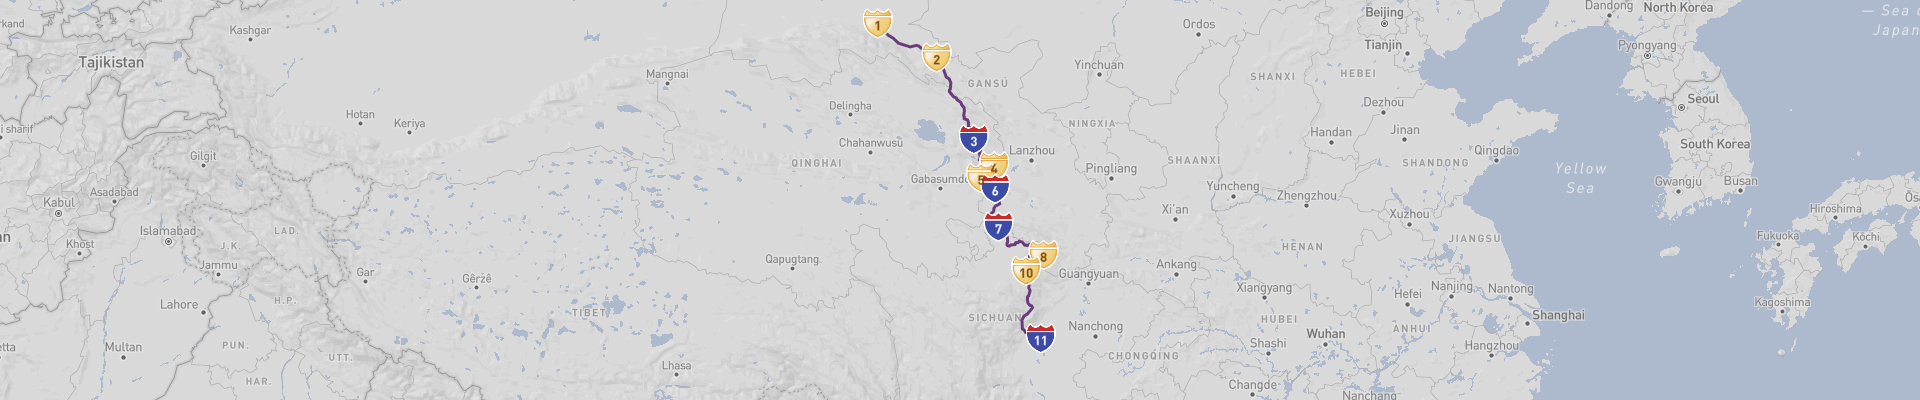 East Tibet Road Trip